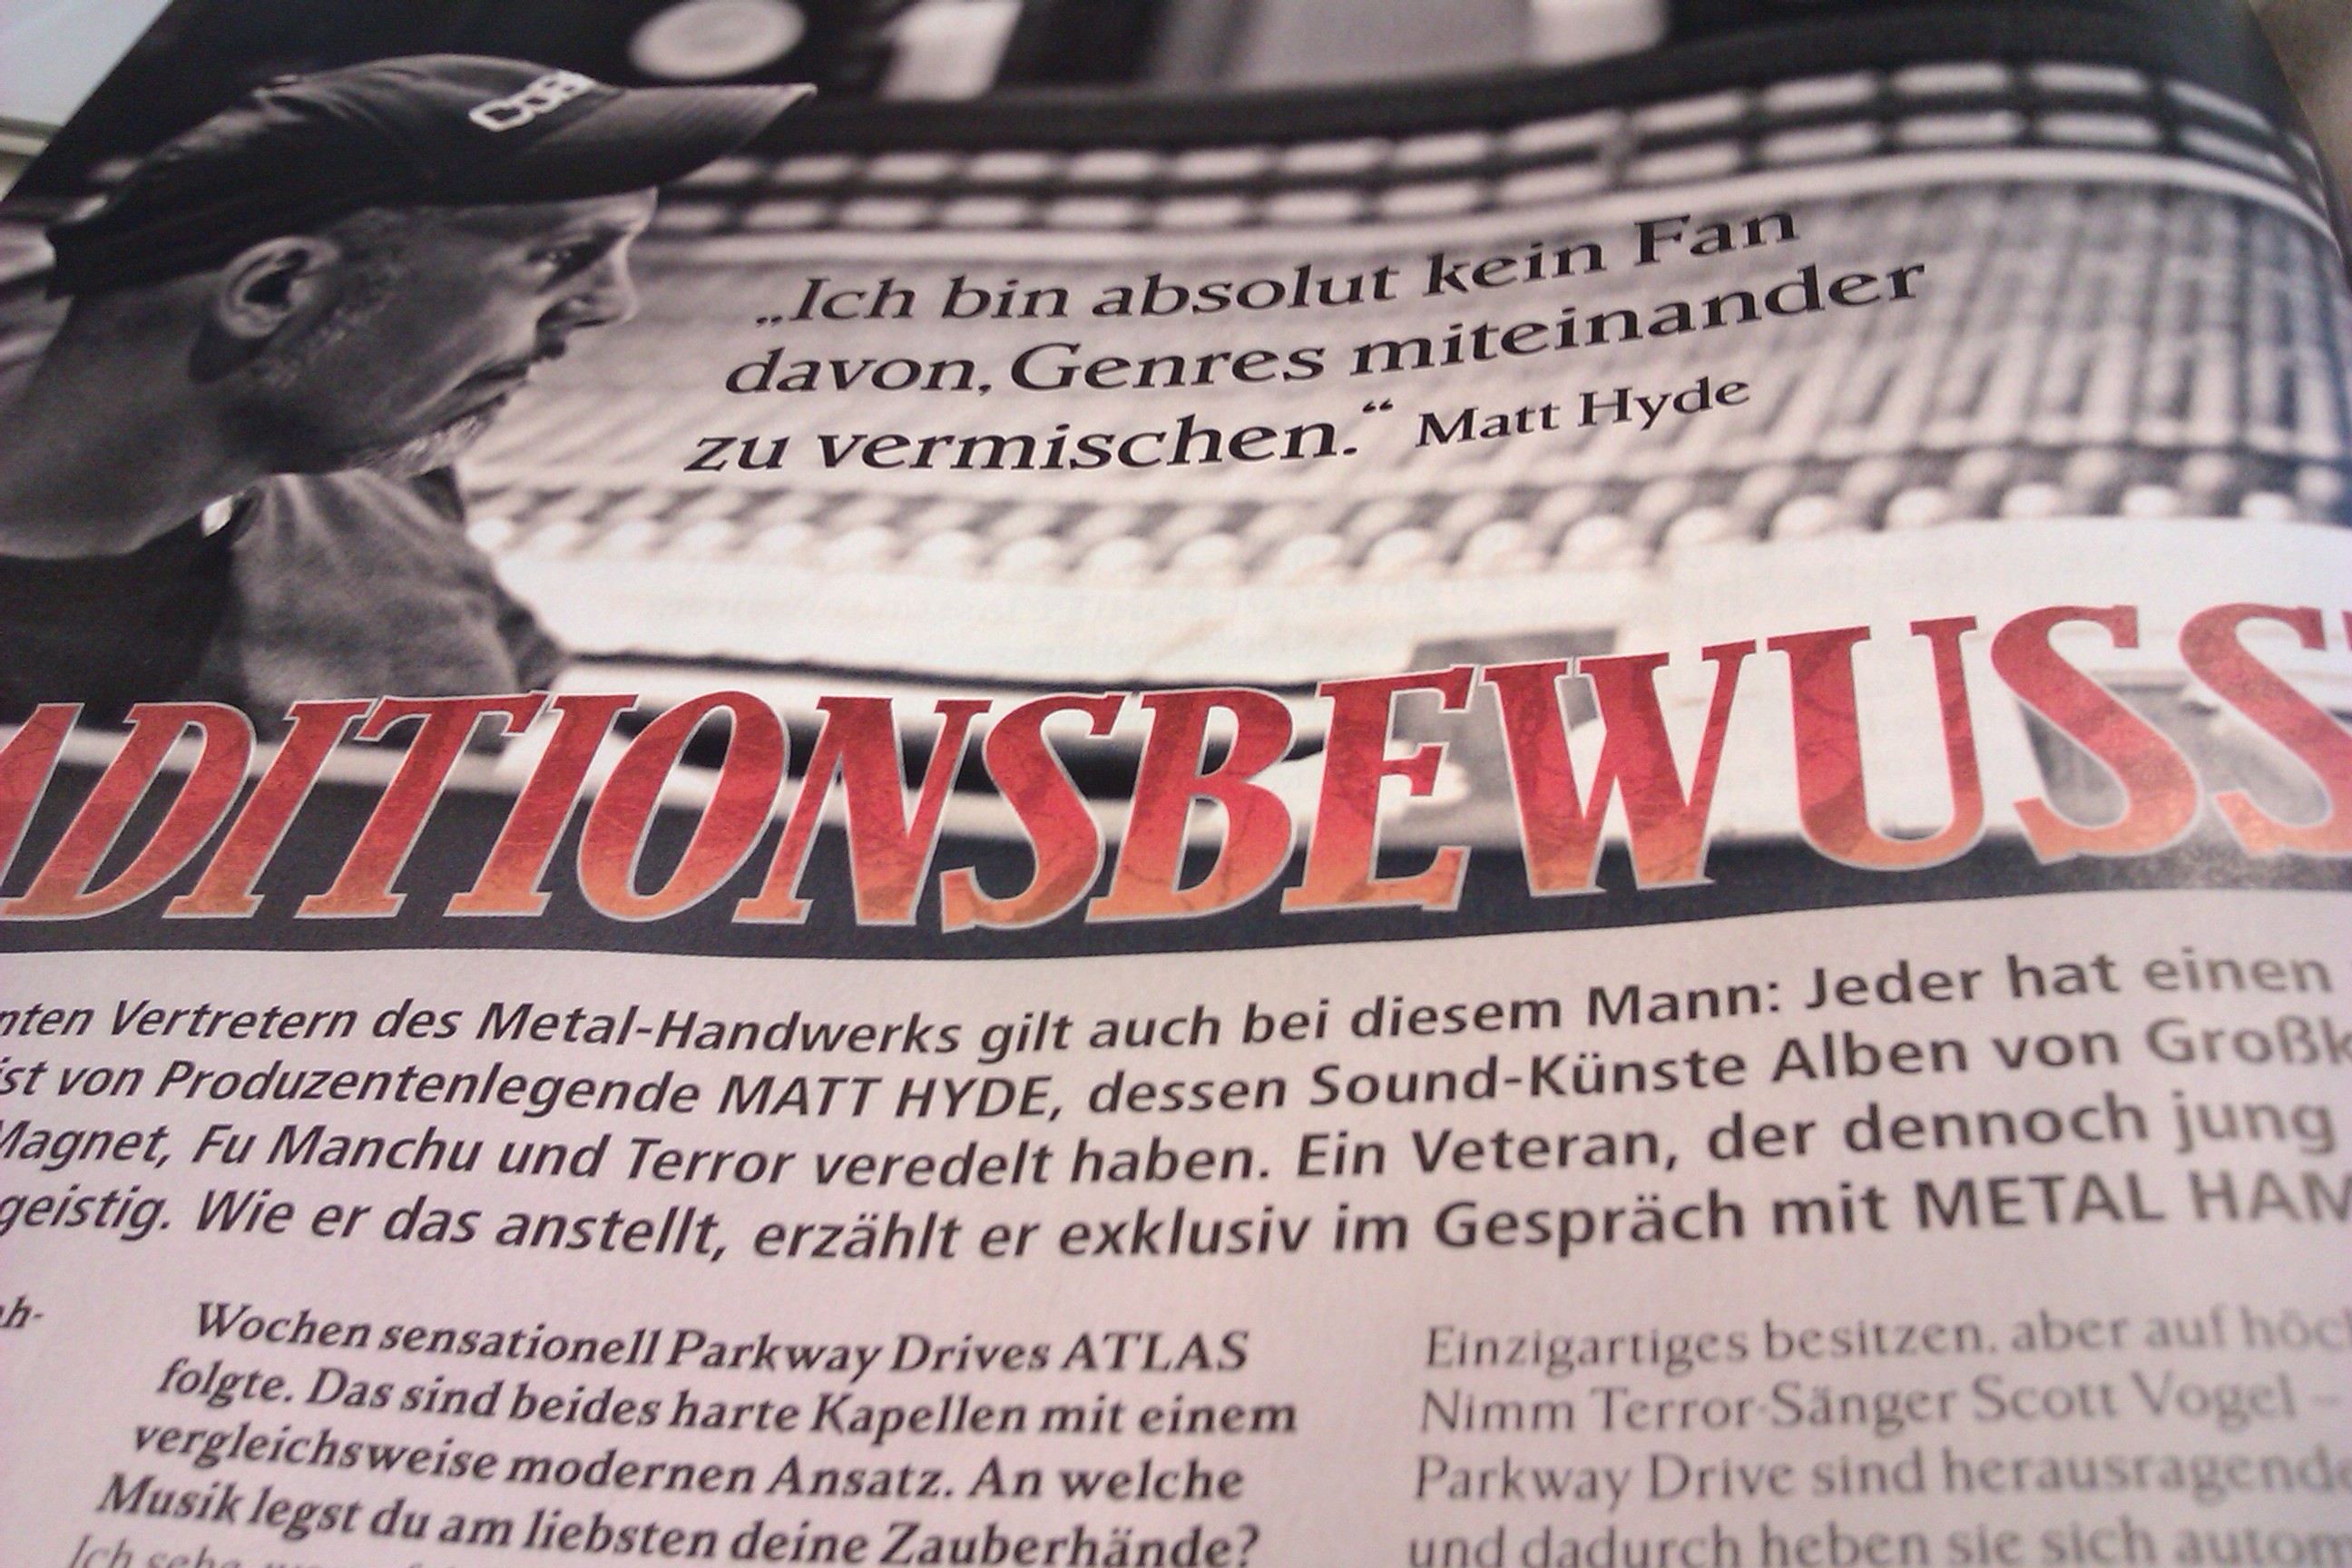 METAL HAMMER-Ausgabe 01/2013